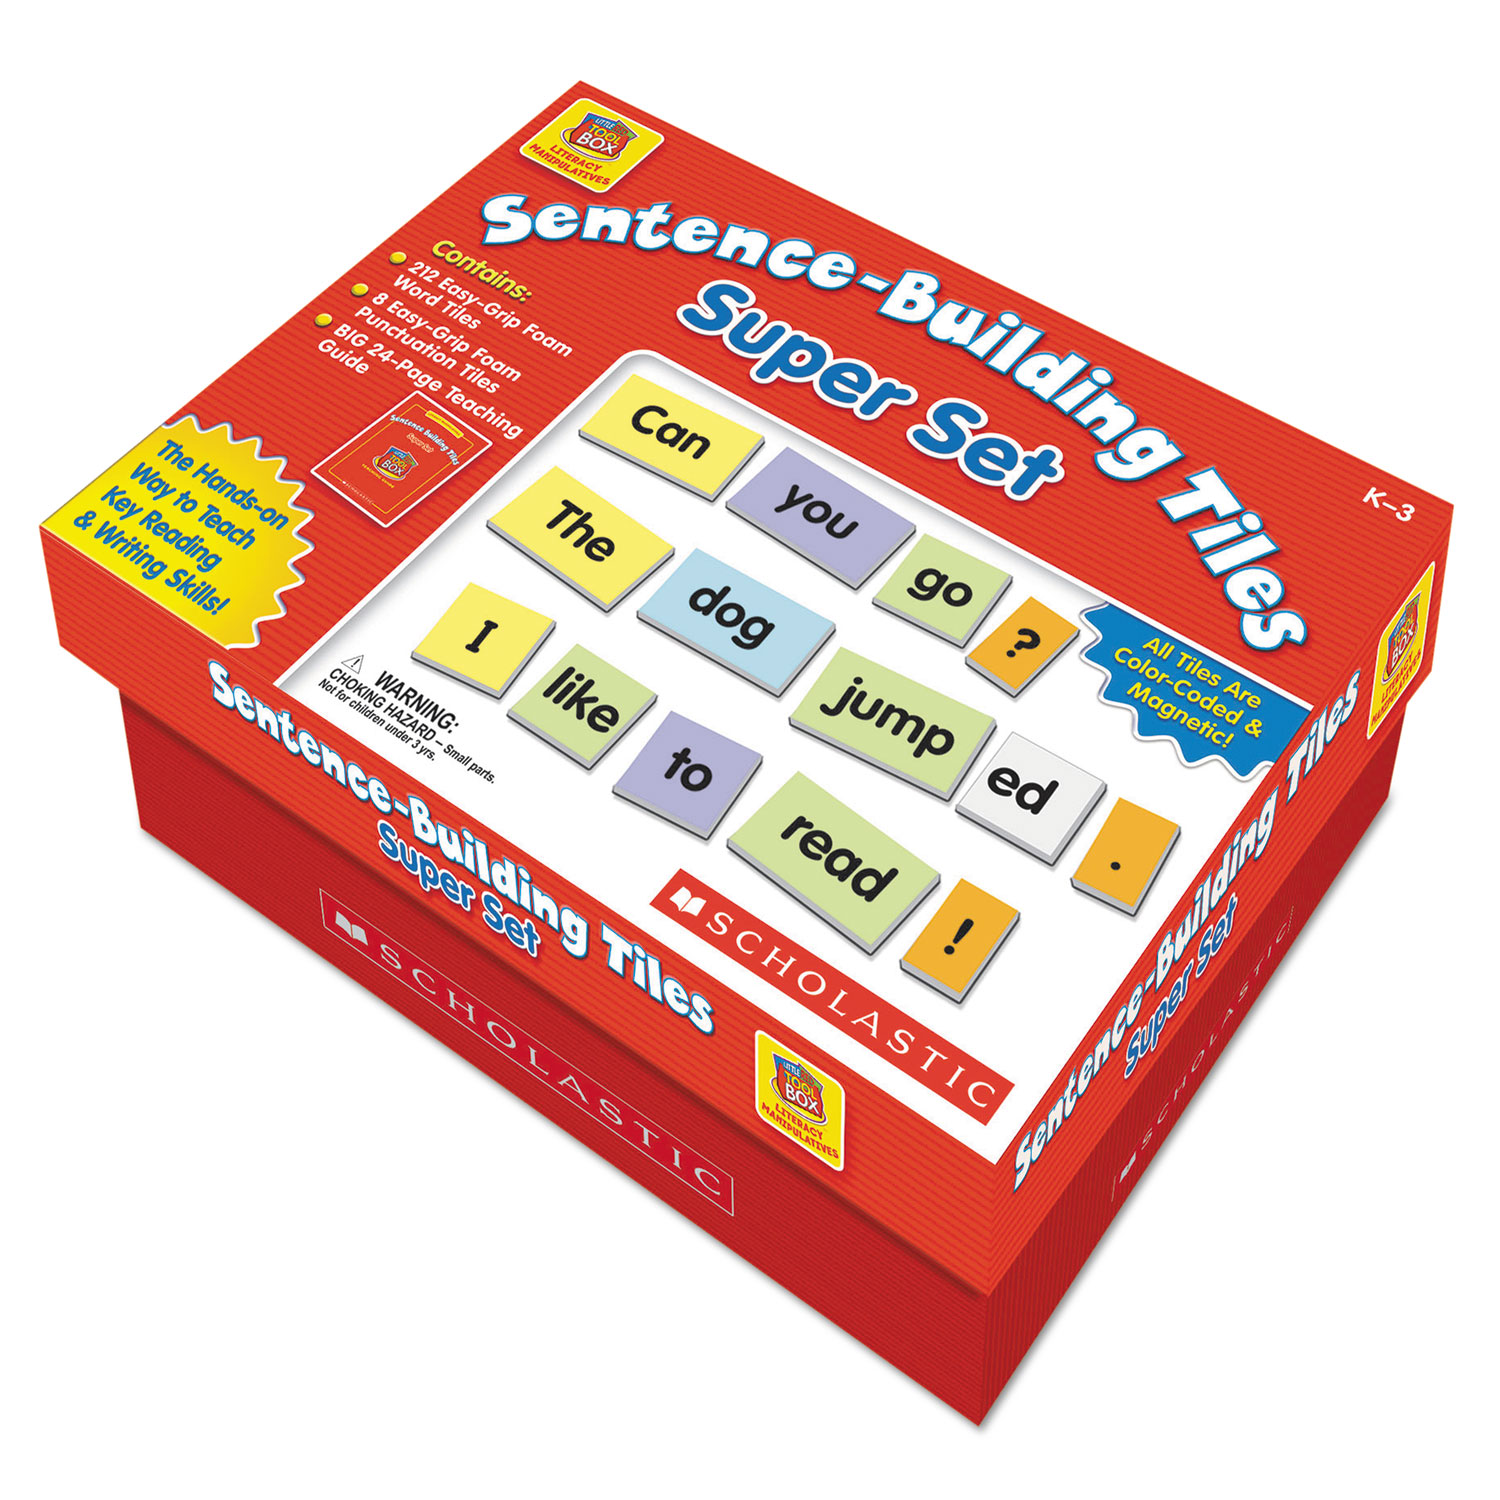 Sentence-Building Tiles Super Set, Ages 5-8